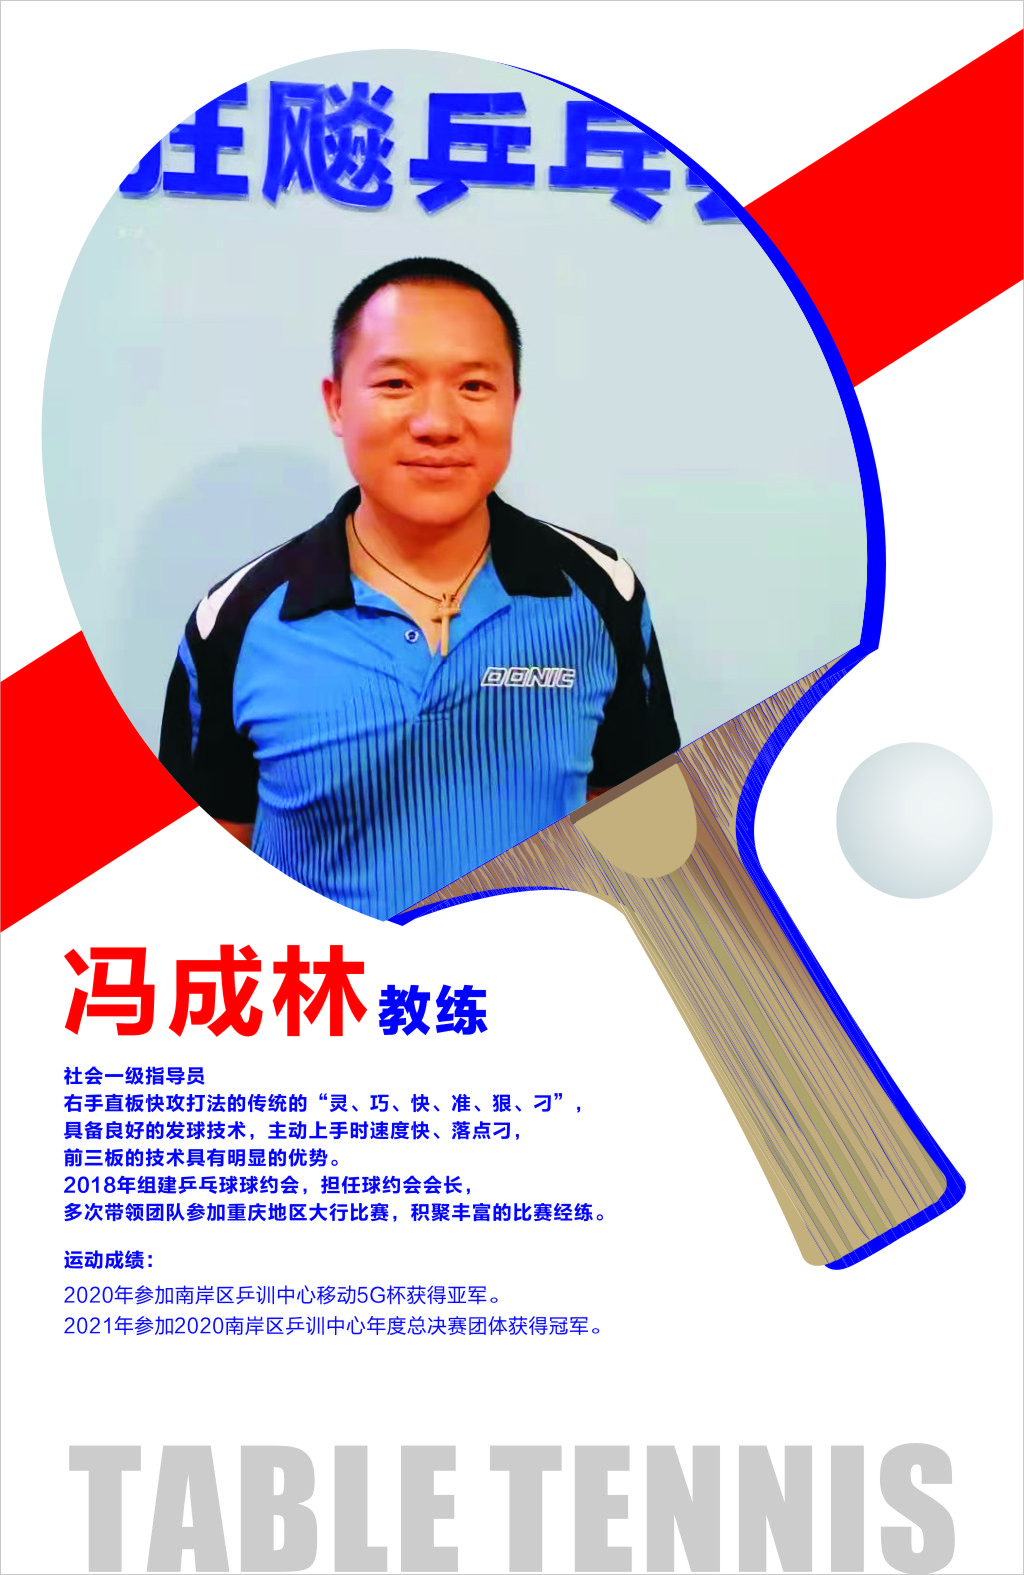 冯成林乒乓球培训教练